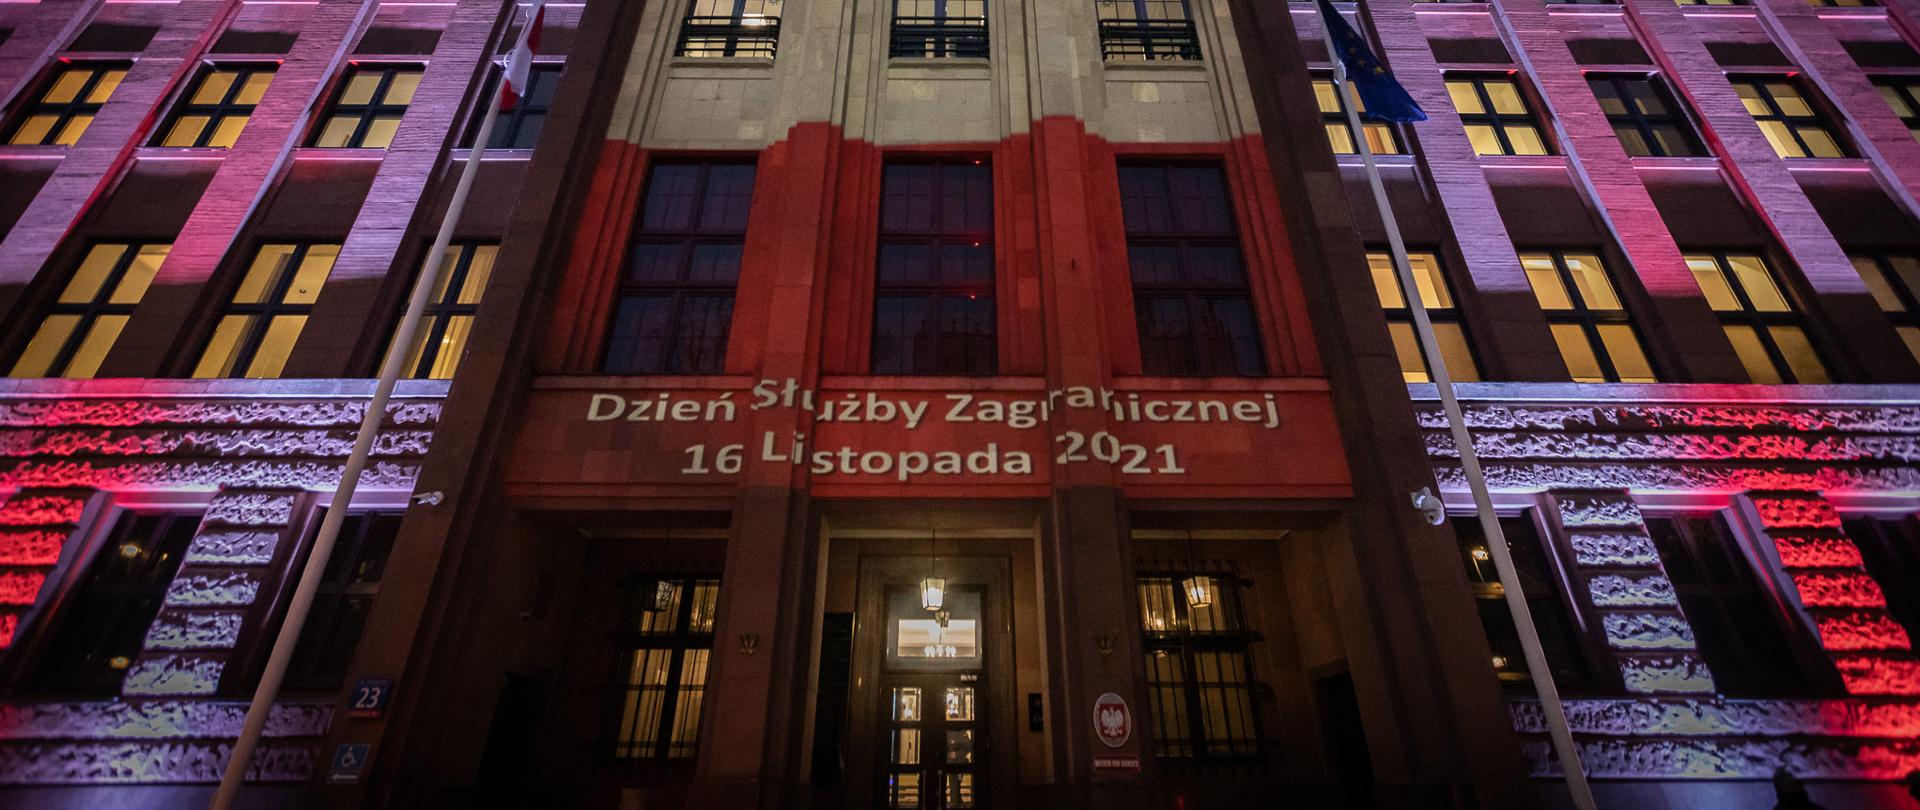 2021.11.16 Warszawa . Budynek MSZ , podswietlony gmach na DSZ .
Fot. Tymon Markowski / MSZ